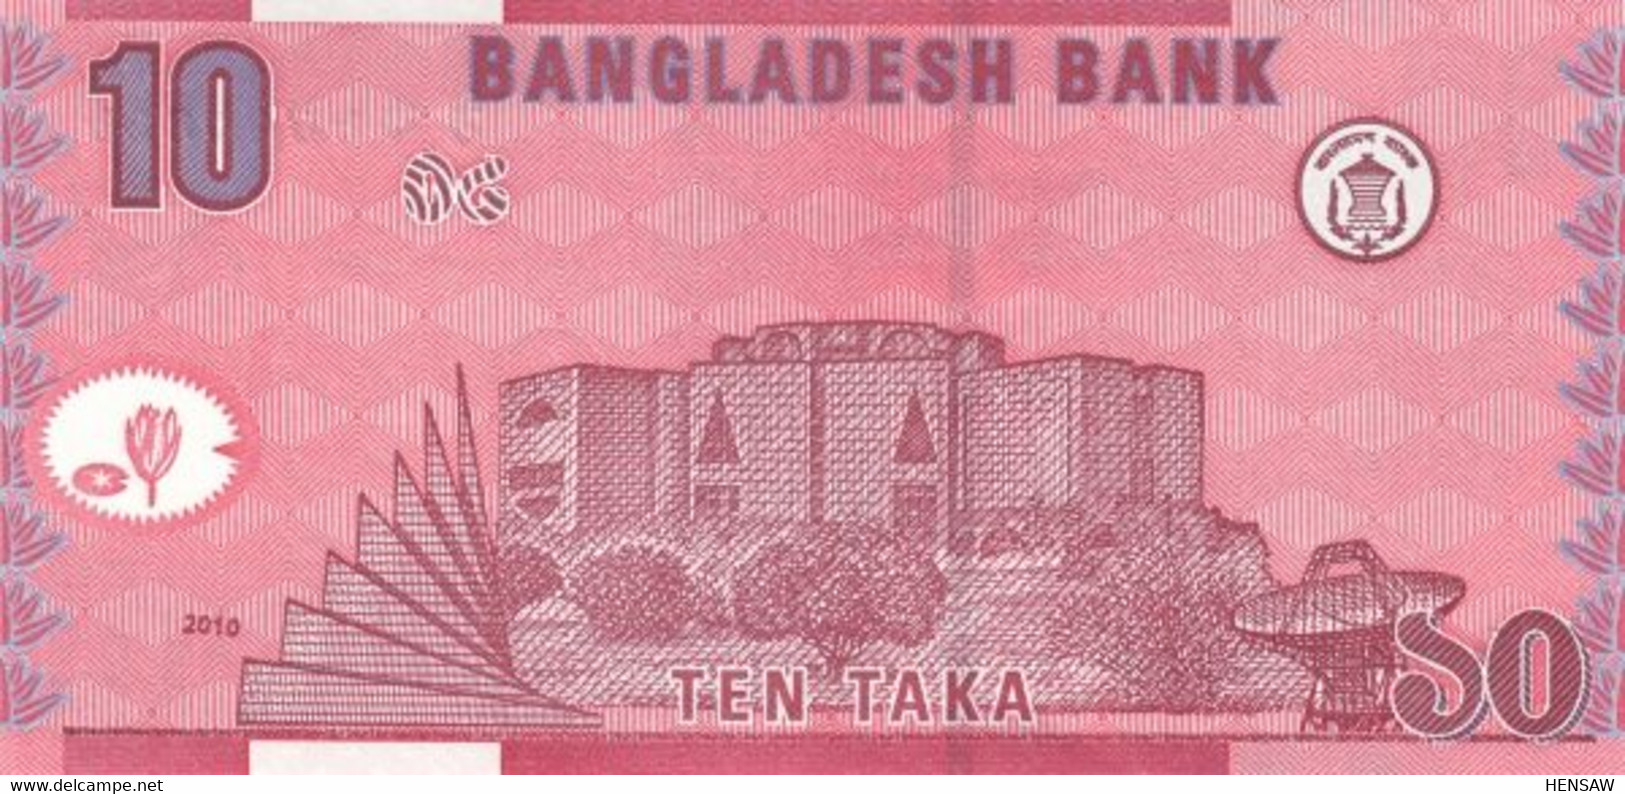 BANGLADESH 10 TAKA P 47c 2010 UNC SC NUEVO - Bangladesh